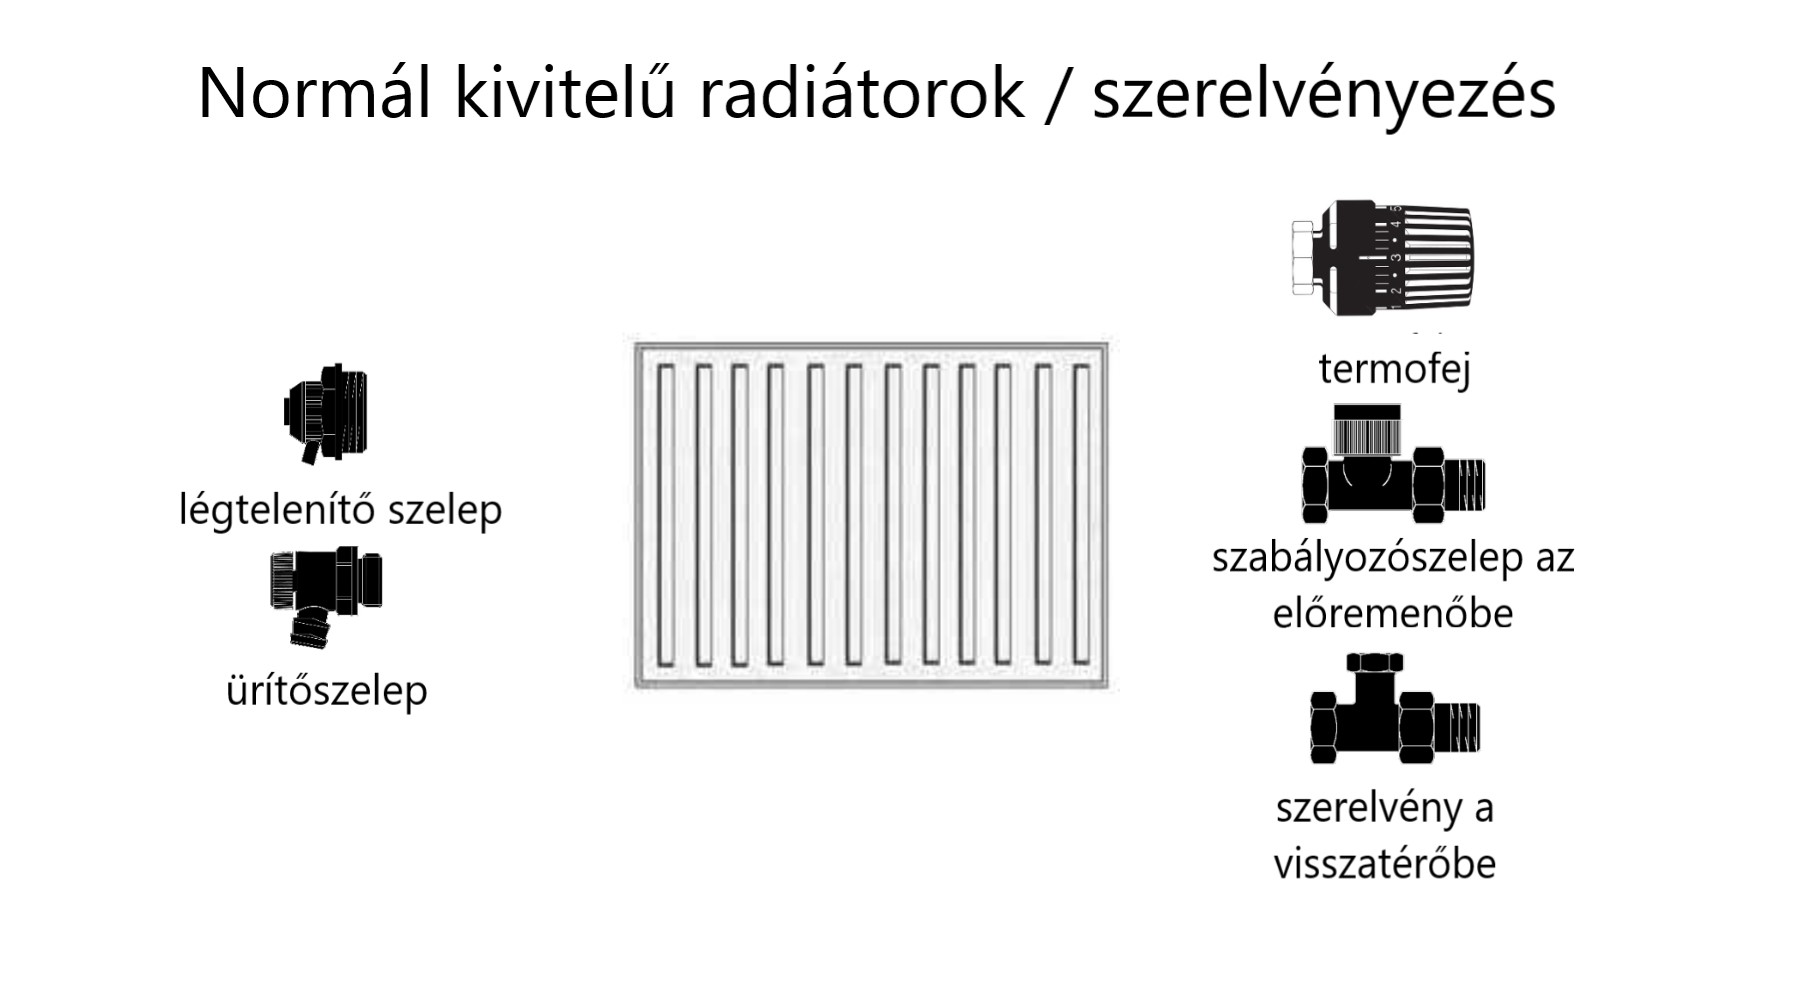 normál kivitelű radiátorok szerelvényezési szükséglete